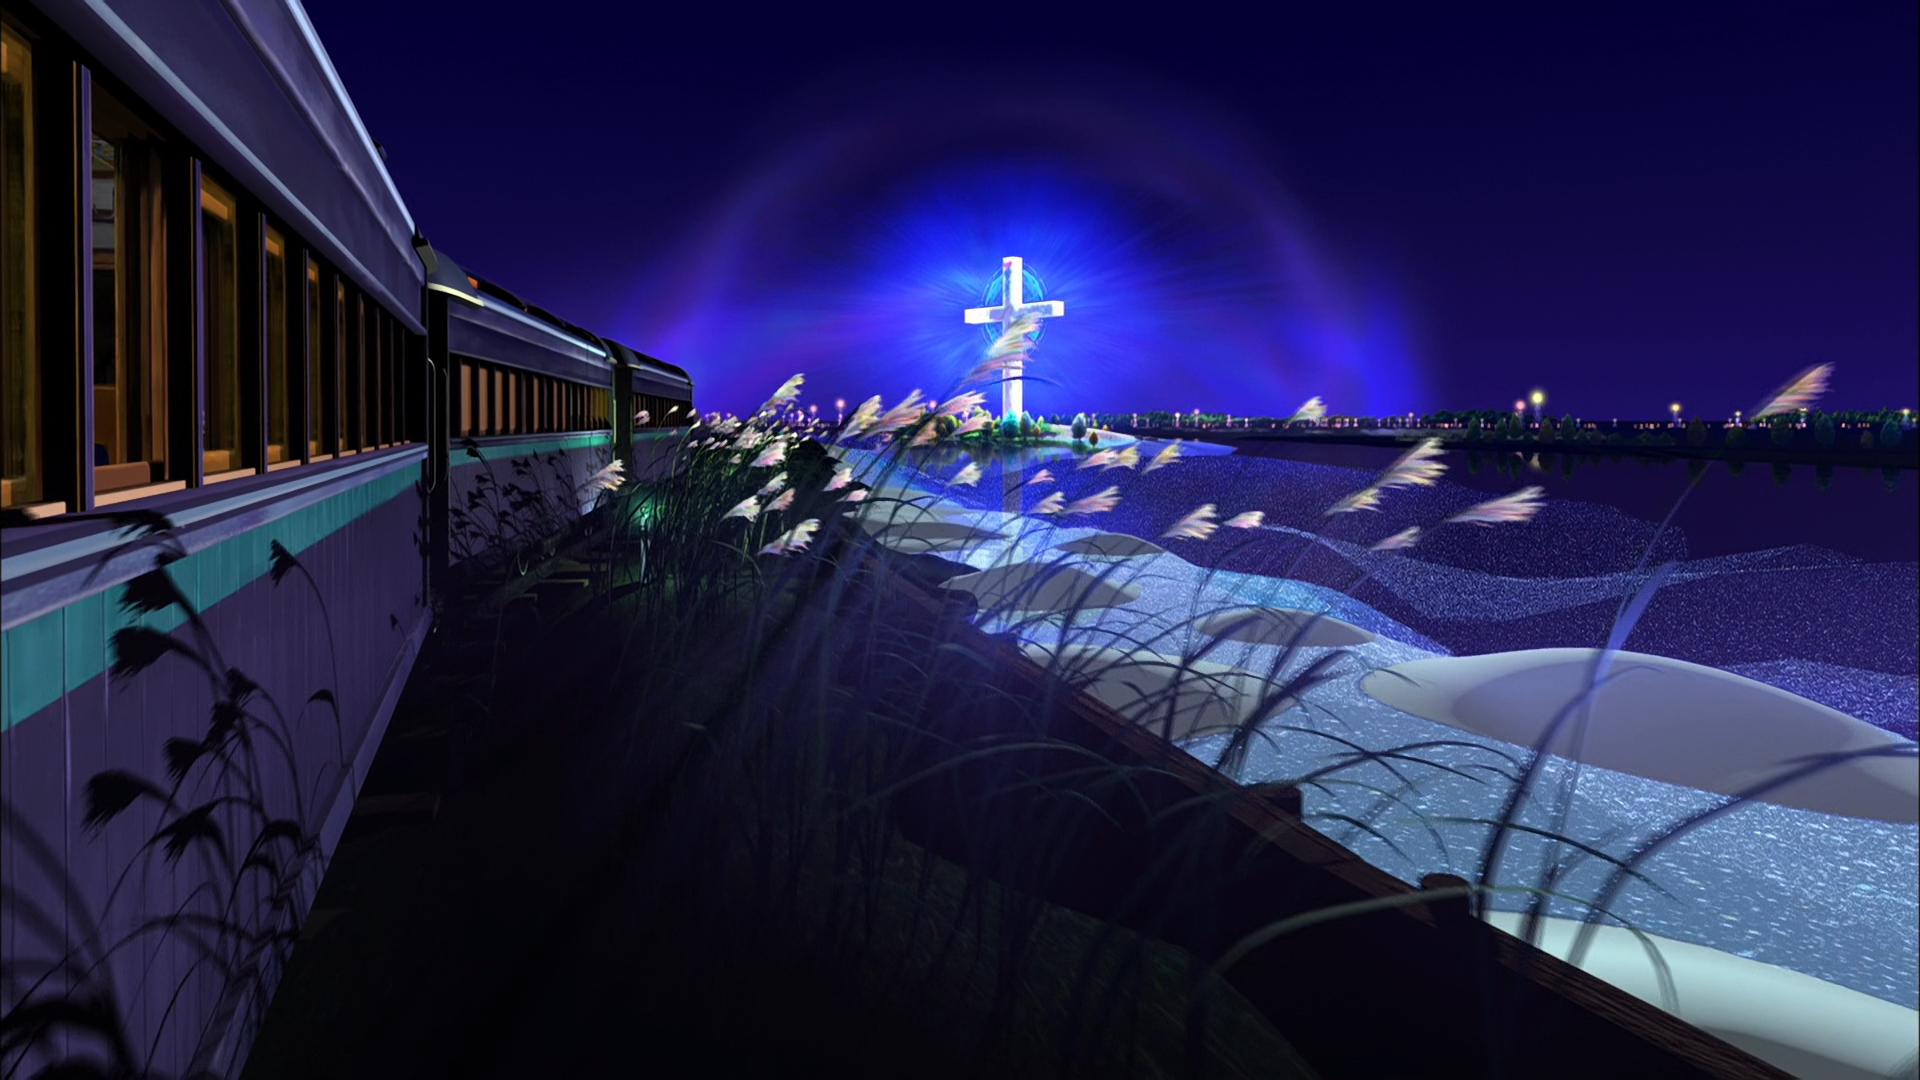 Ночь галактической дороги. Ночь на Галактической железной дороге. Ночь на космической железной дороге. Ночь в поезде на Галактической железной дороге.